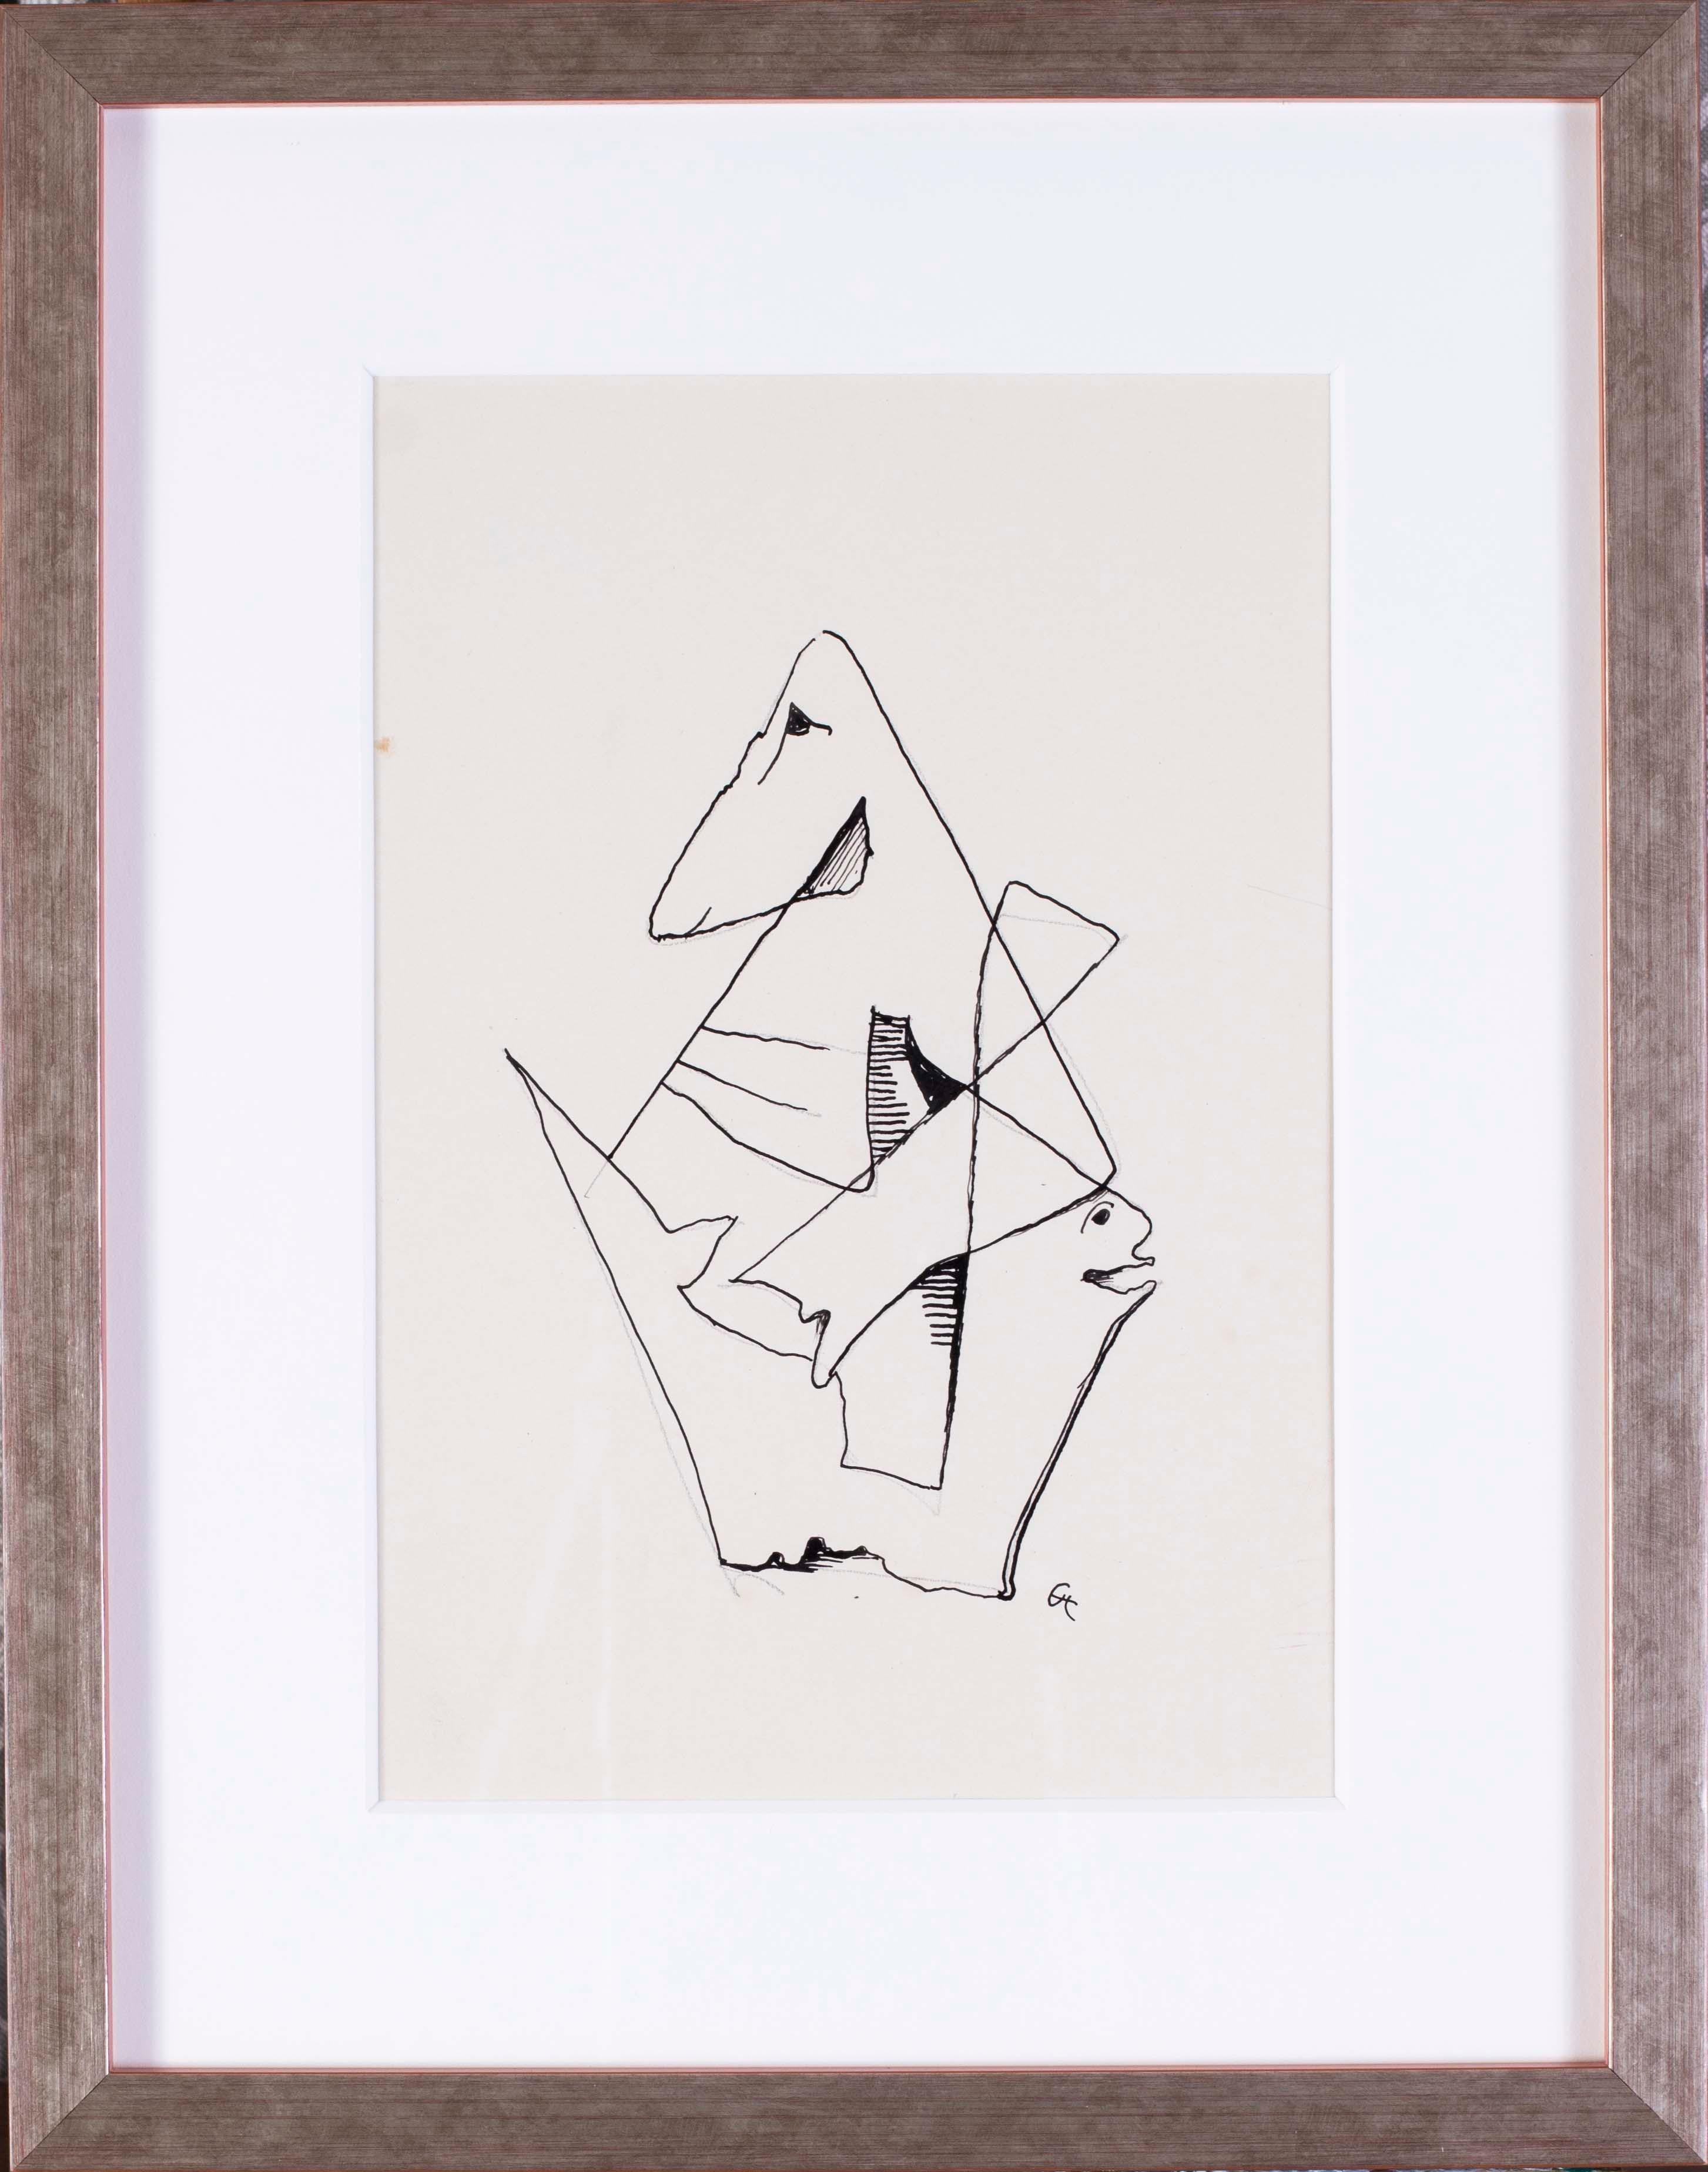 Carl Hofer (Deutscher, 1875 - 1955)
Abstrahierte form A
Bleistift, Feder und Tinte auf Papier
Signiert mit Monogram 'CH' (unten rechts)
11.3/8 x 7.1/2 in. (28.8 x 19 cm.)

Provenienz: Diese Werke stammen von der zweiten Ehefrau des Künstlers,